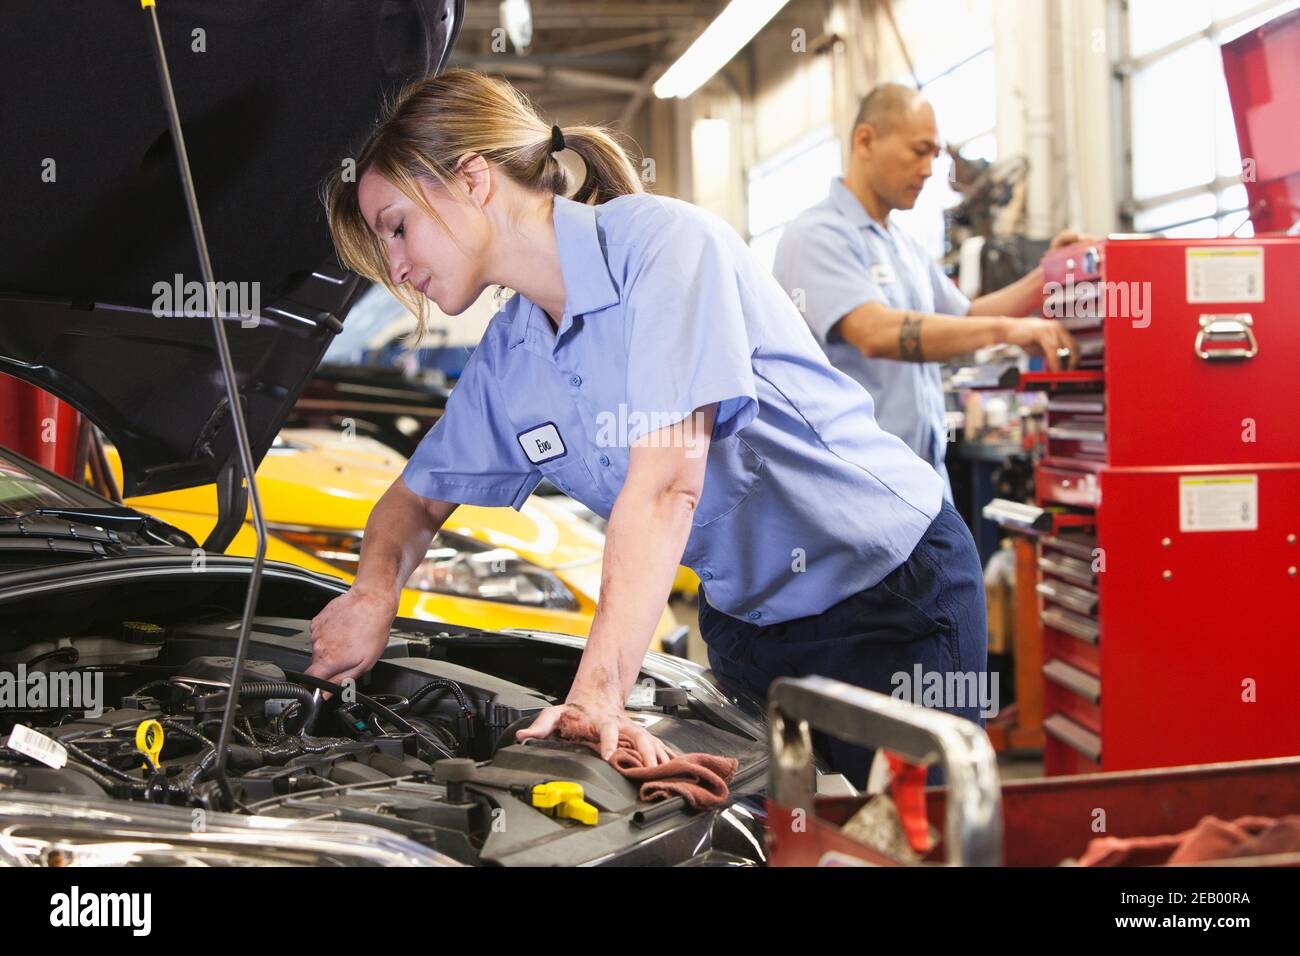 Kaukasische weibliche Mechaniker arbeitet am Motor in der Autowerkstatt Mit hispanischen Kollegen im Hintergrund Stockfoto